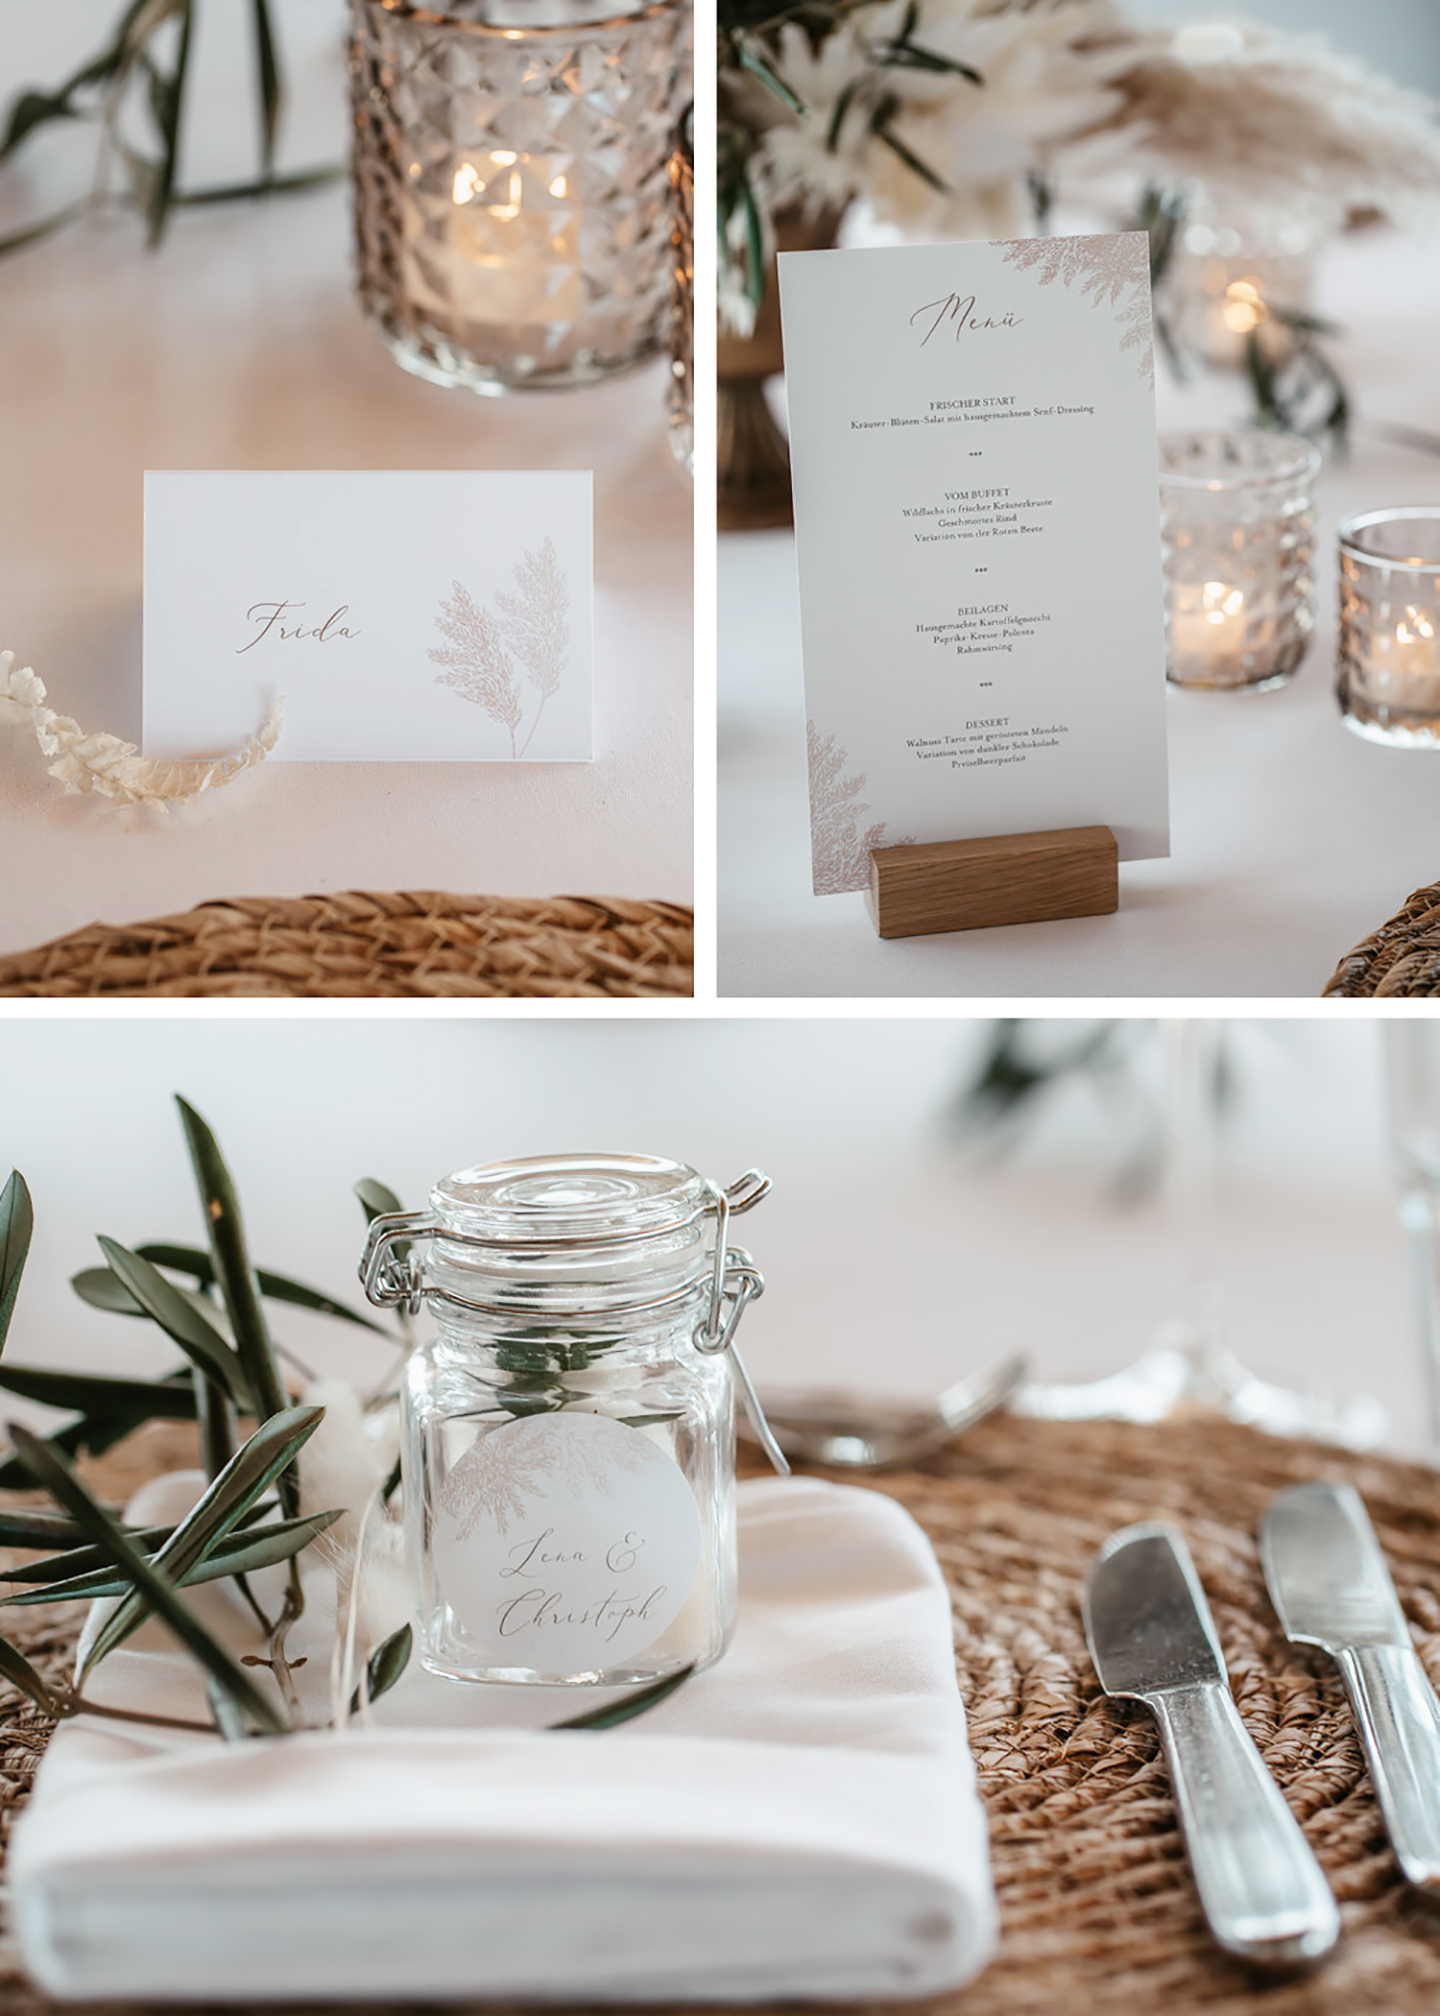 Die Hochzeitspapeterie auf dem Tisch besteht nicht nur aus der Menükarte sondern auch aus kleinen Tischkärtchen und Aufklebern auf den Gastgeschenken.